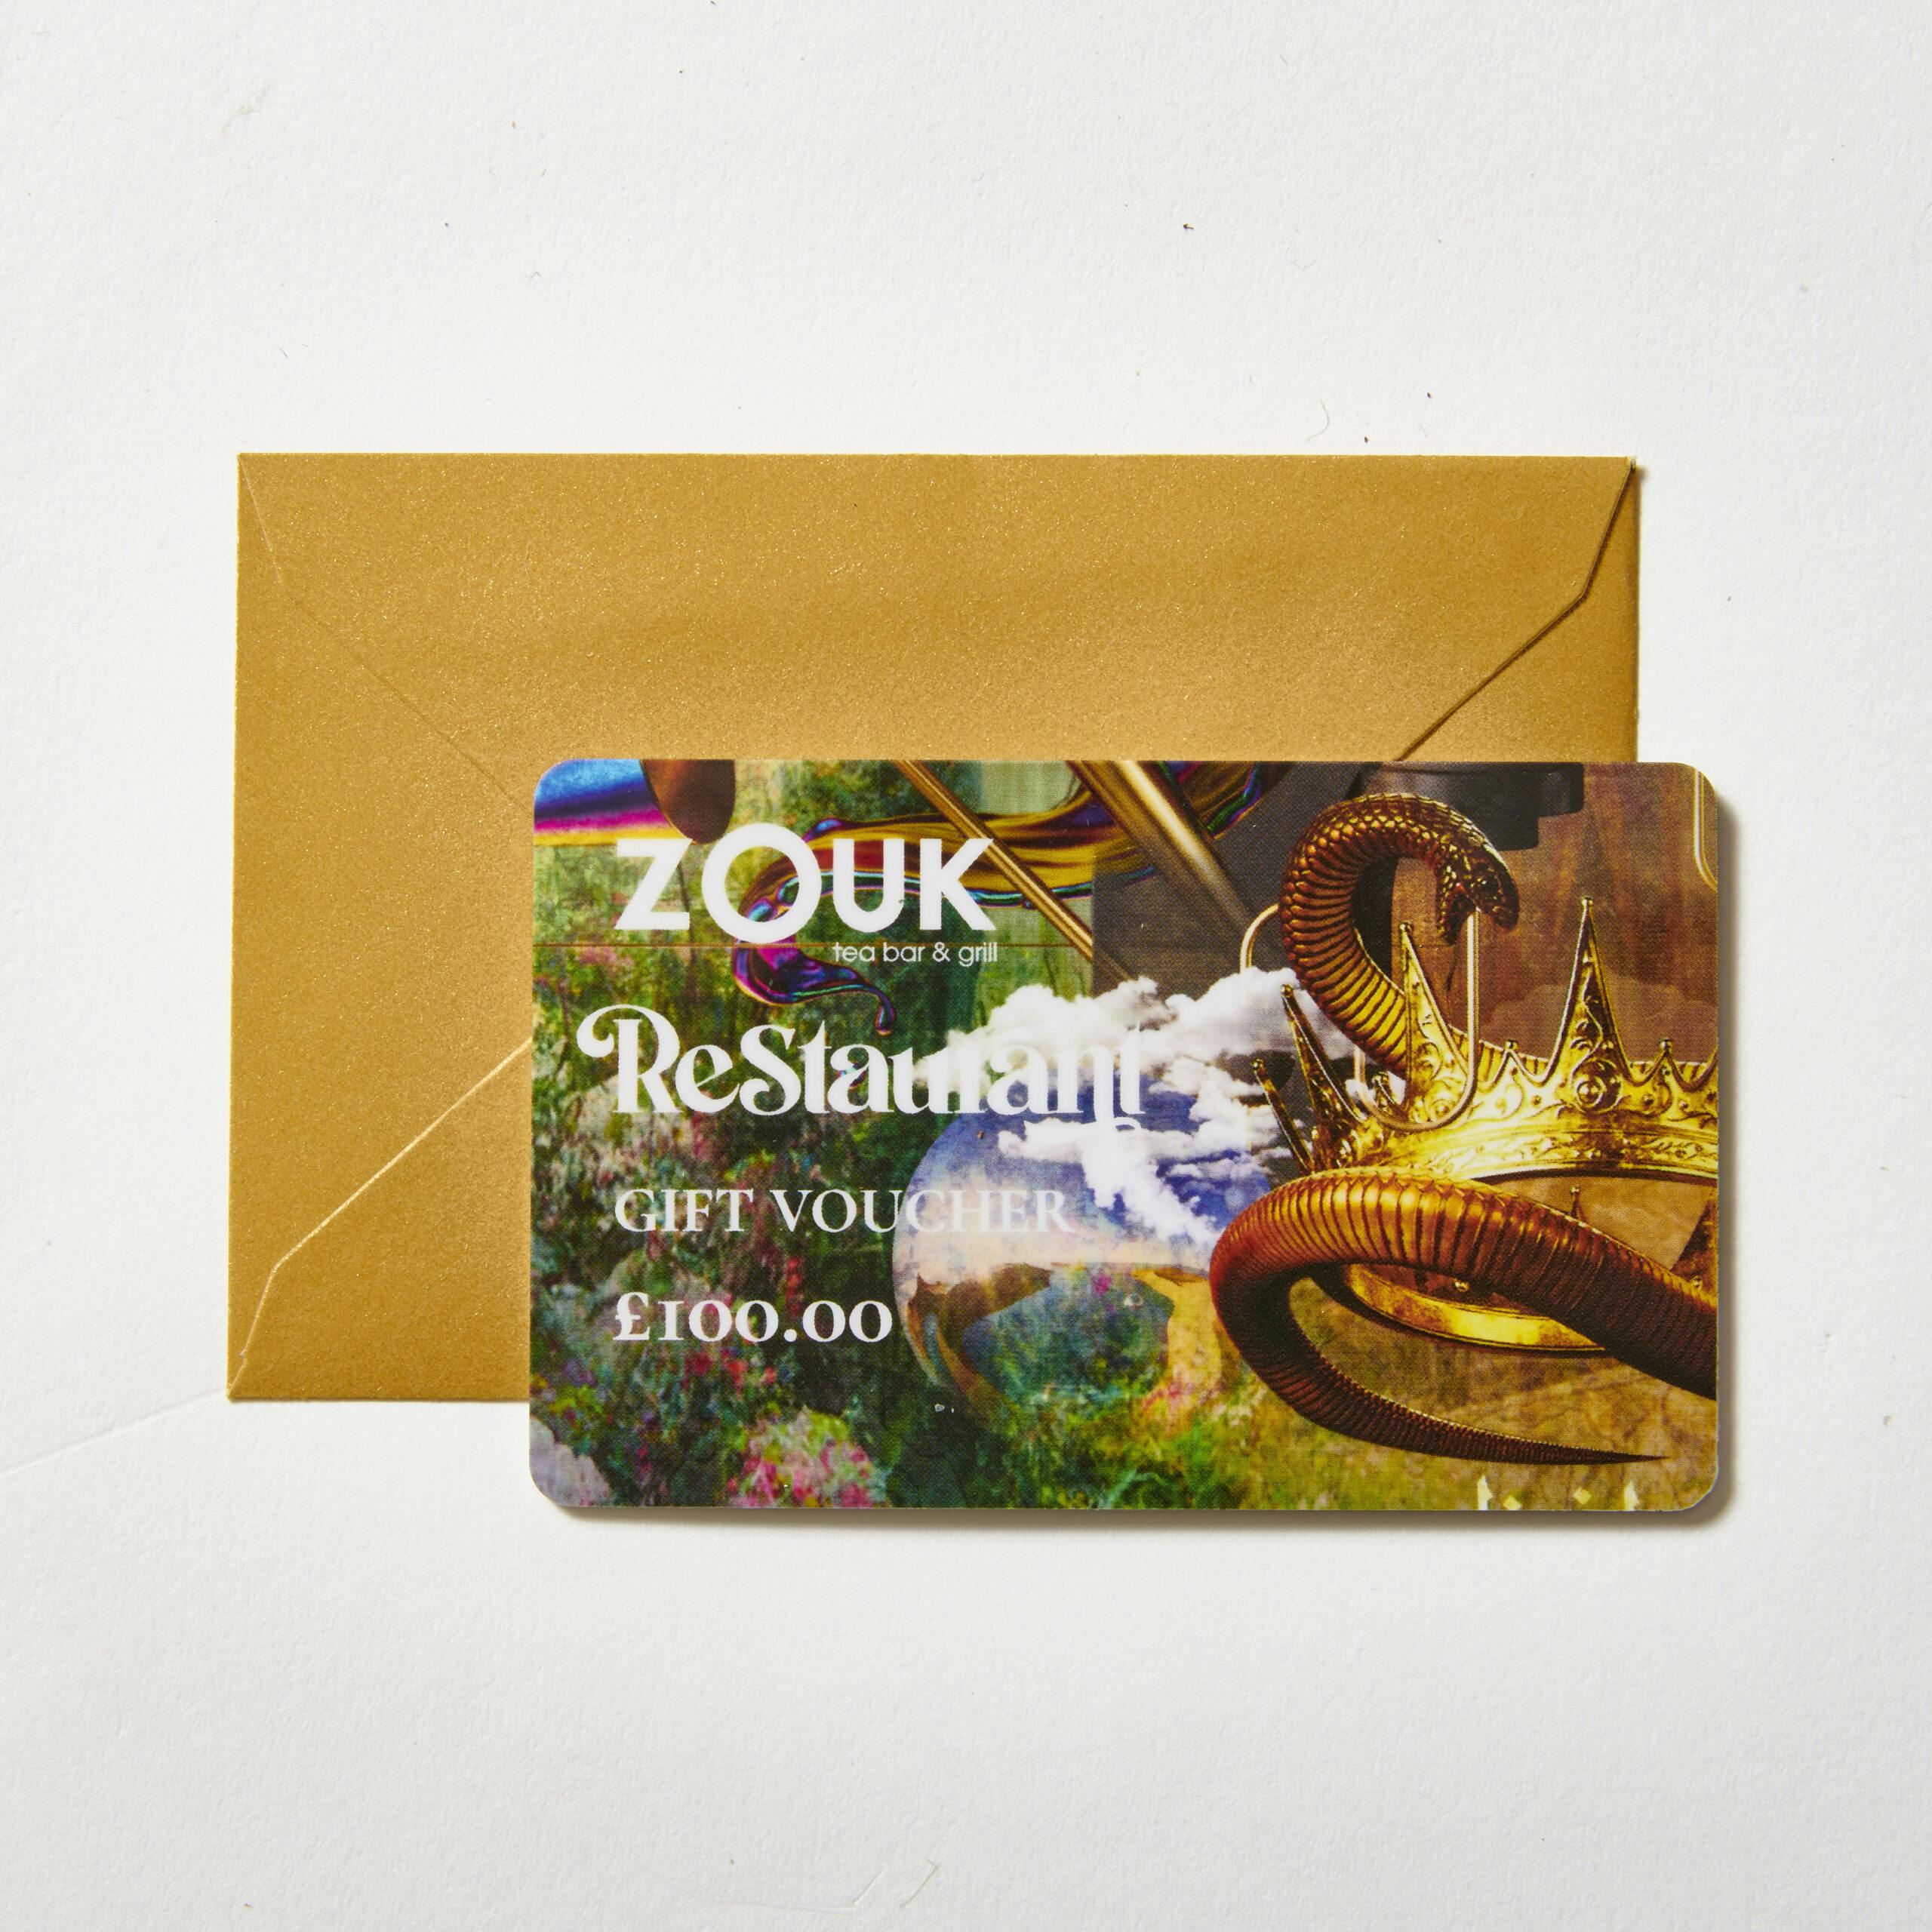 Zouk £100 Restaurant Gift Card